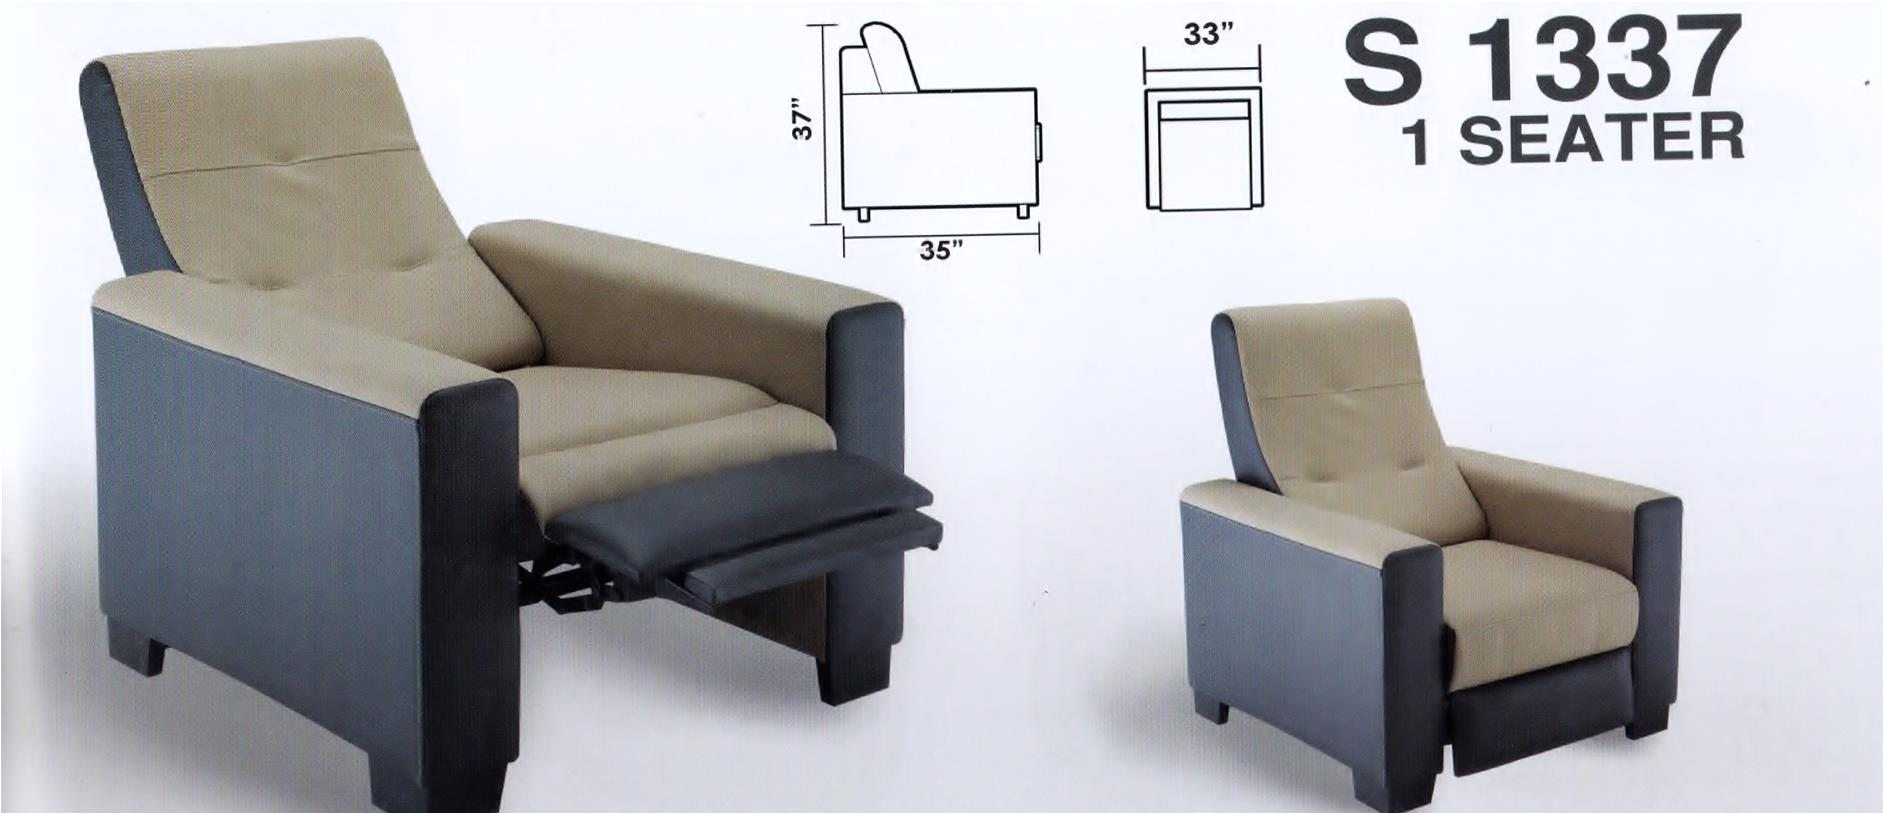 yoga chair stretch sofa elegant ziemlich sofas relax zeitgenossisch die besten einrichtungsideen